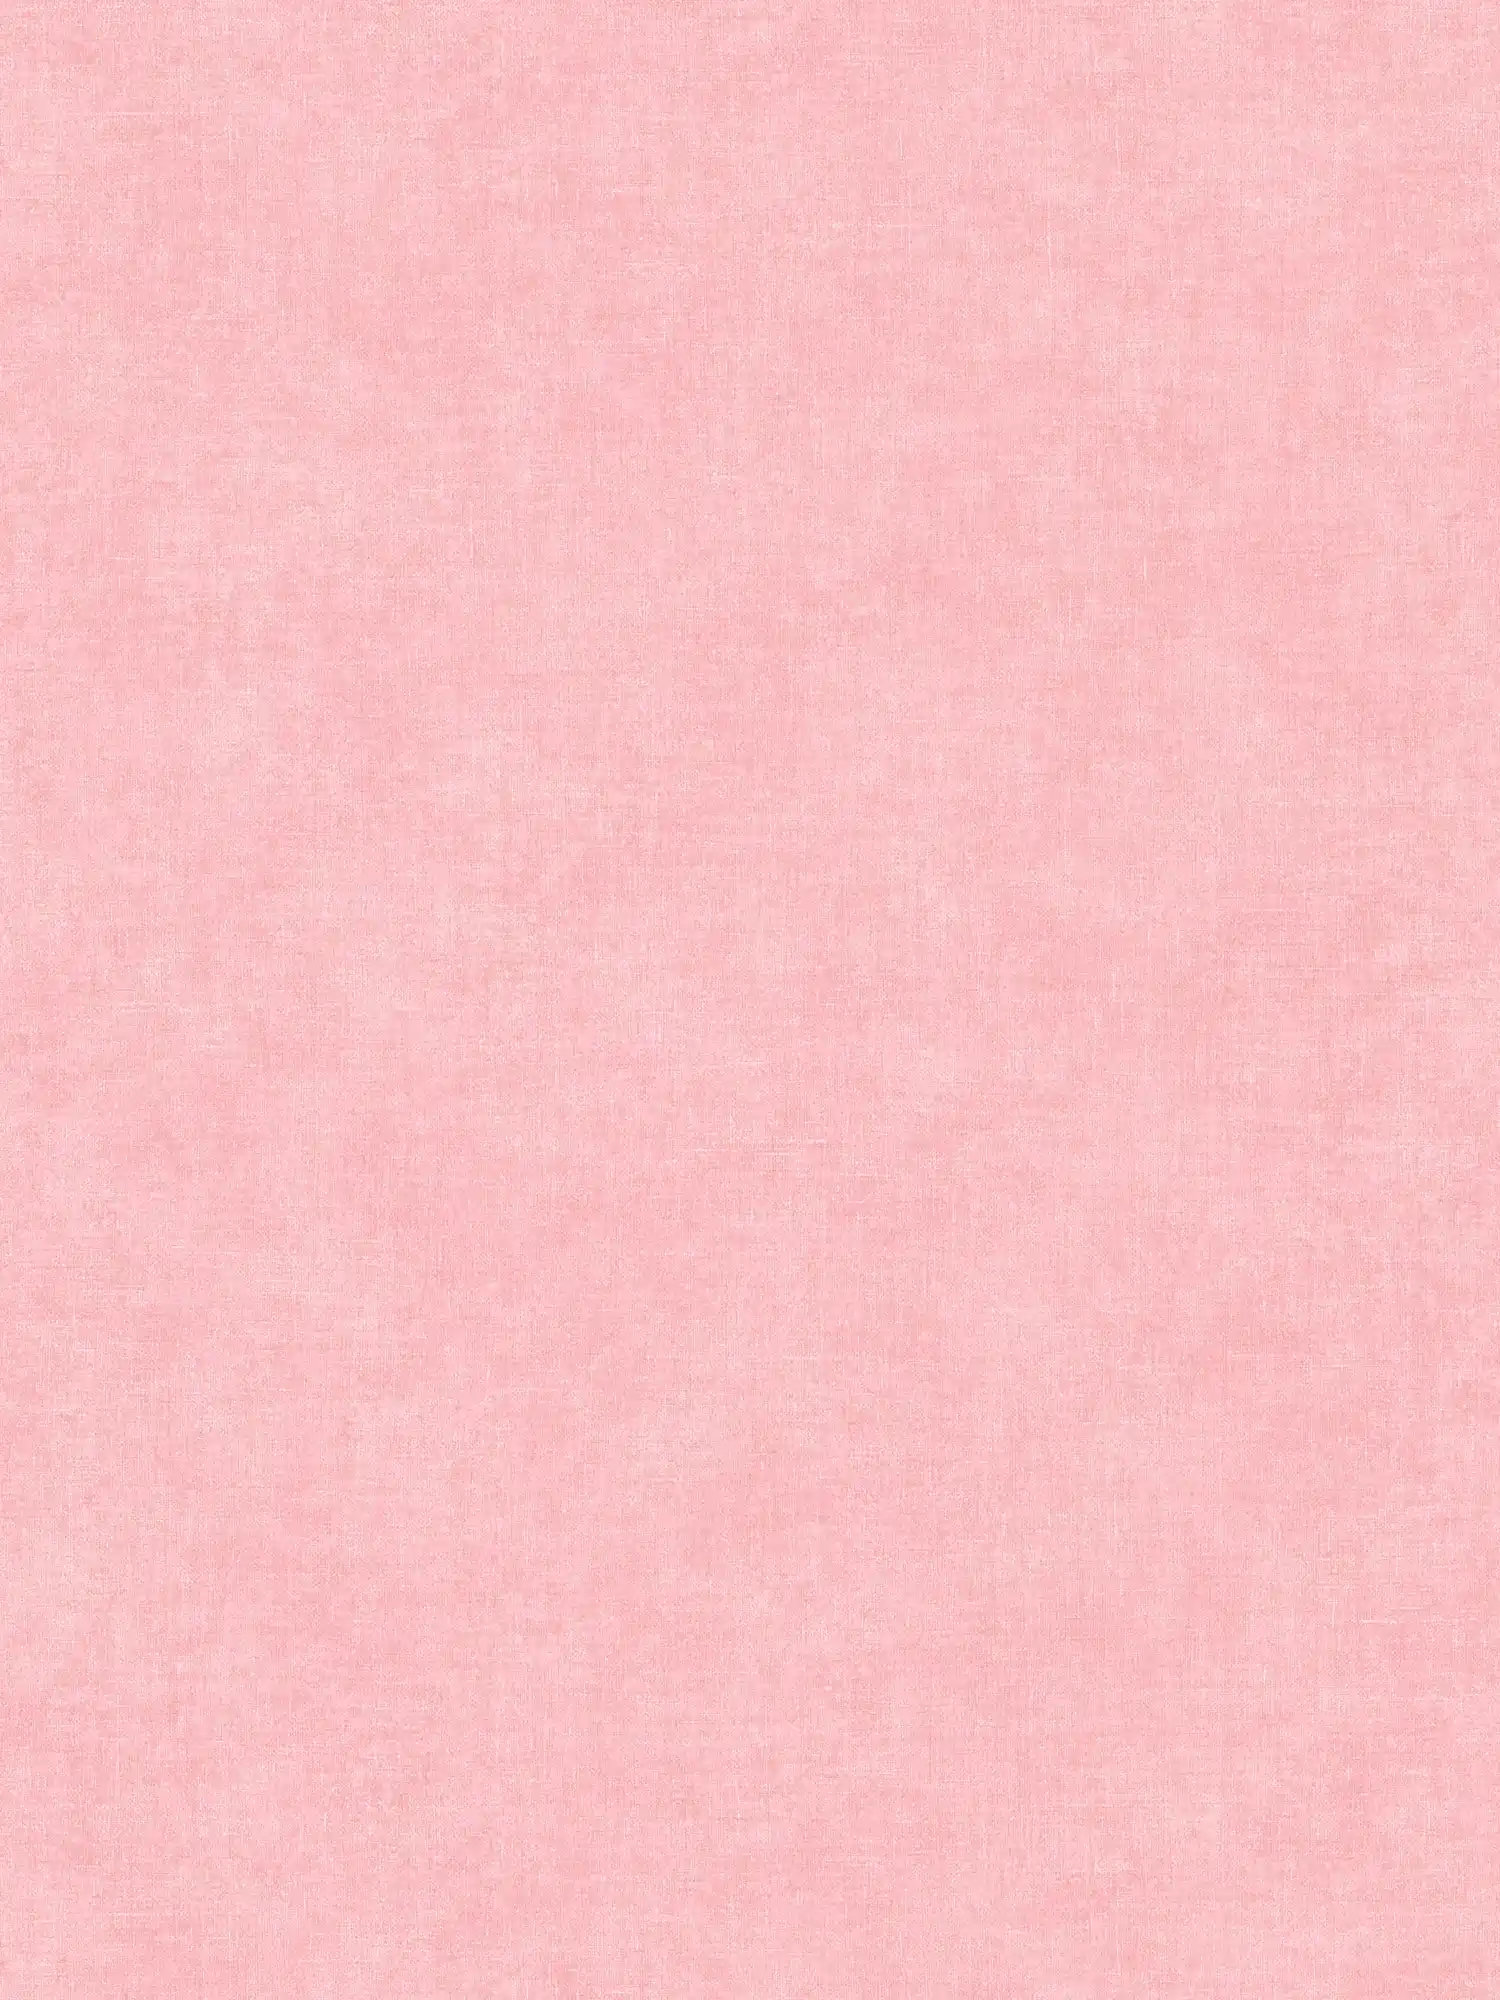 Papier peint rose uni & mat avec motifs structurés
